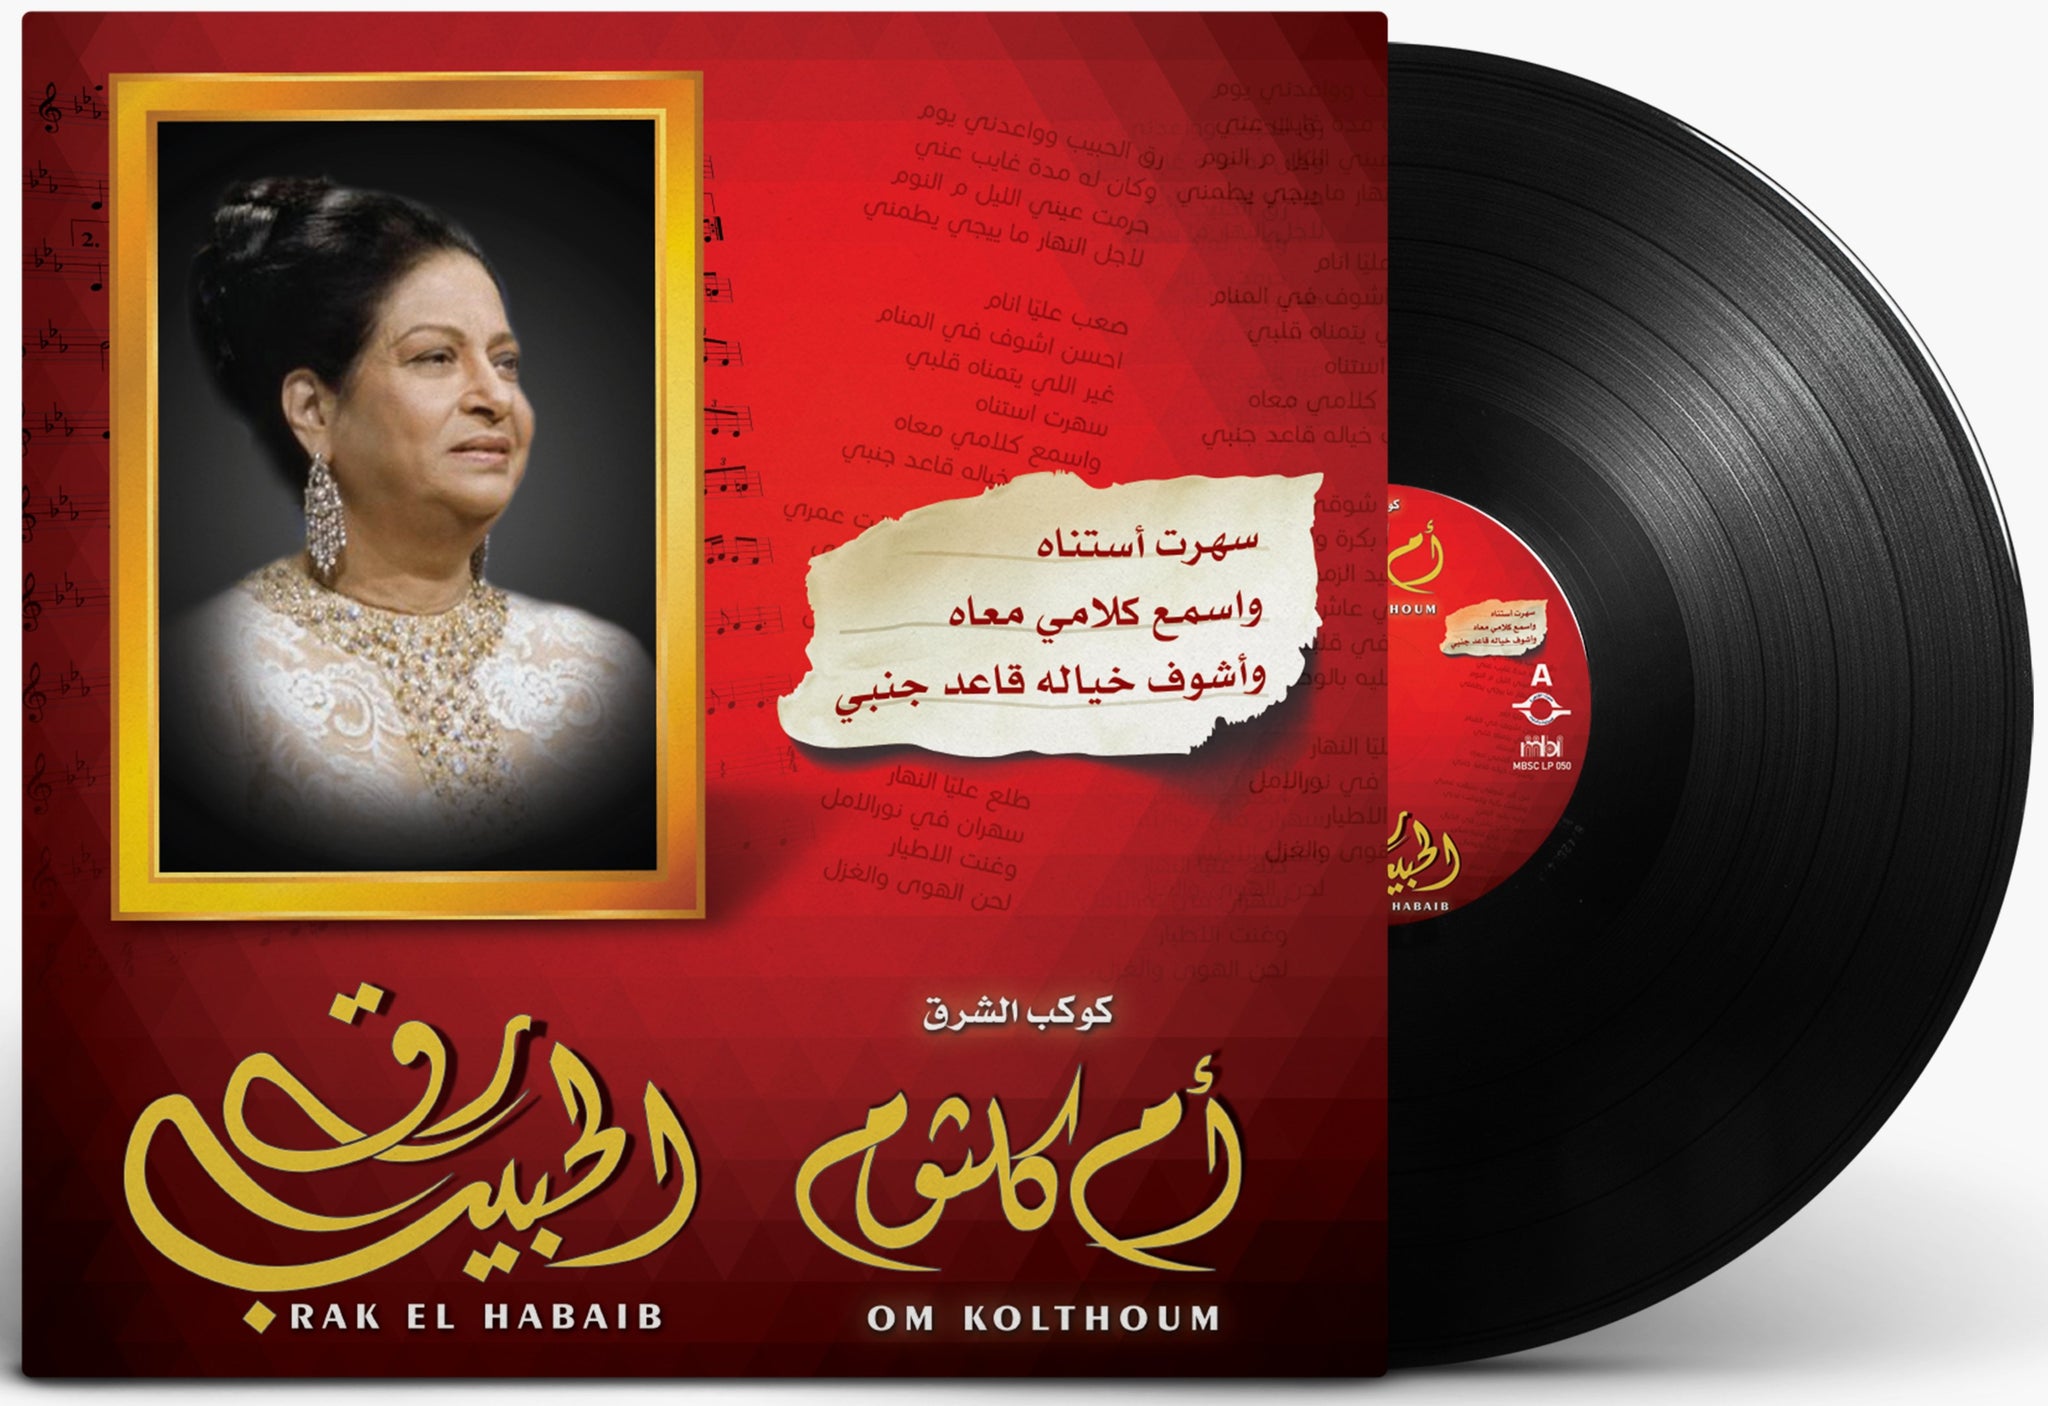 أم كلثوم رق الحبيب أسطوانة جرامافون Artist: Om Kolthoum Album: Rak El Habib Format: Vinyl LP